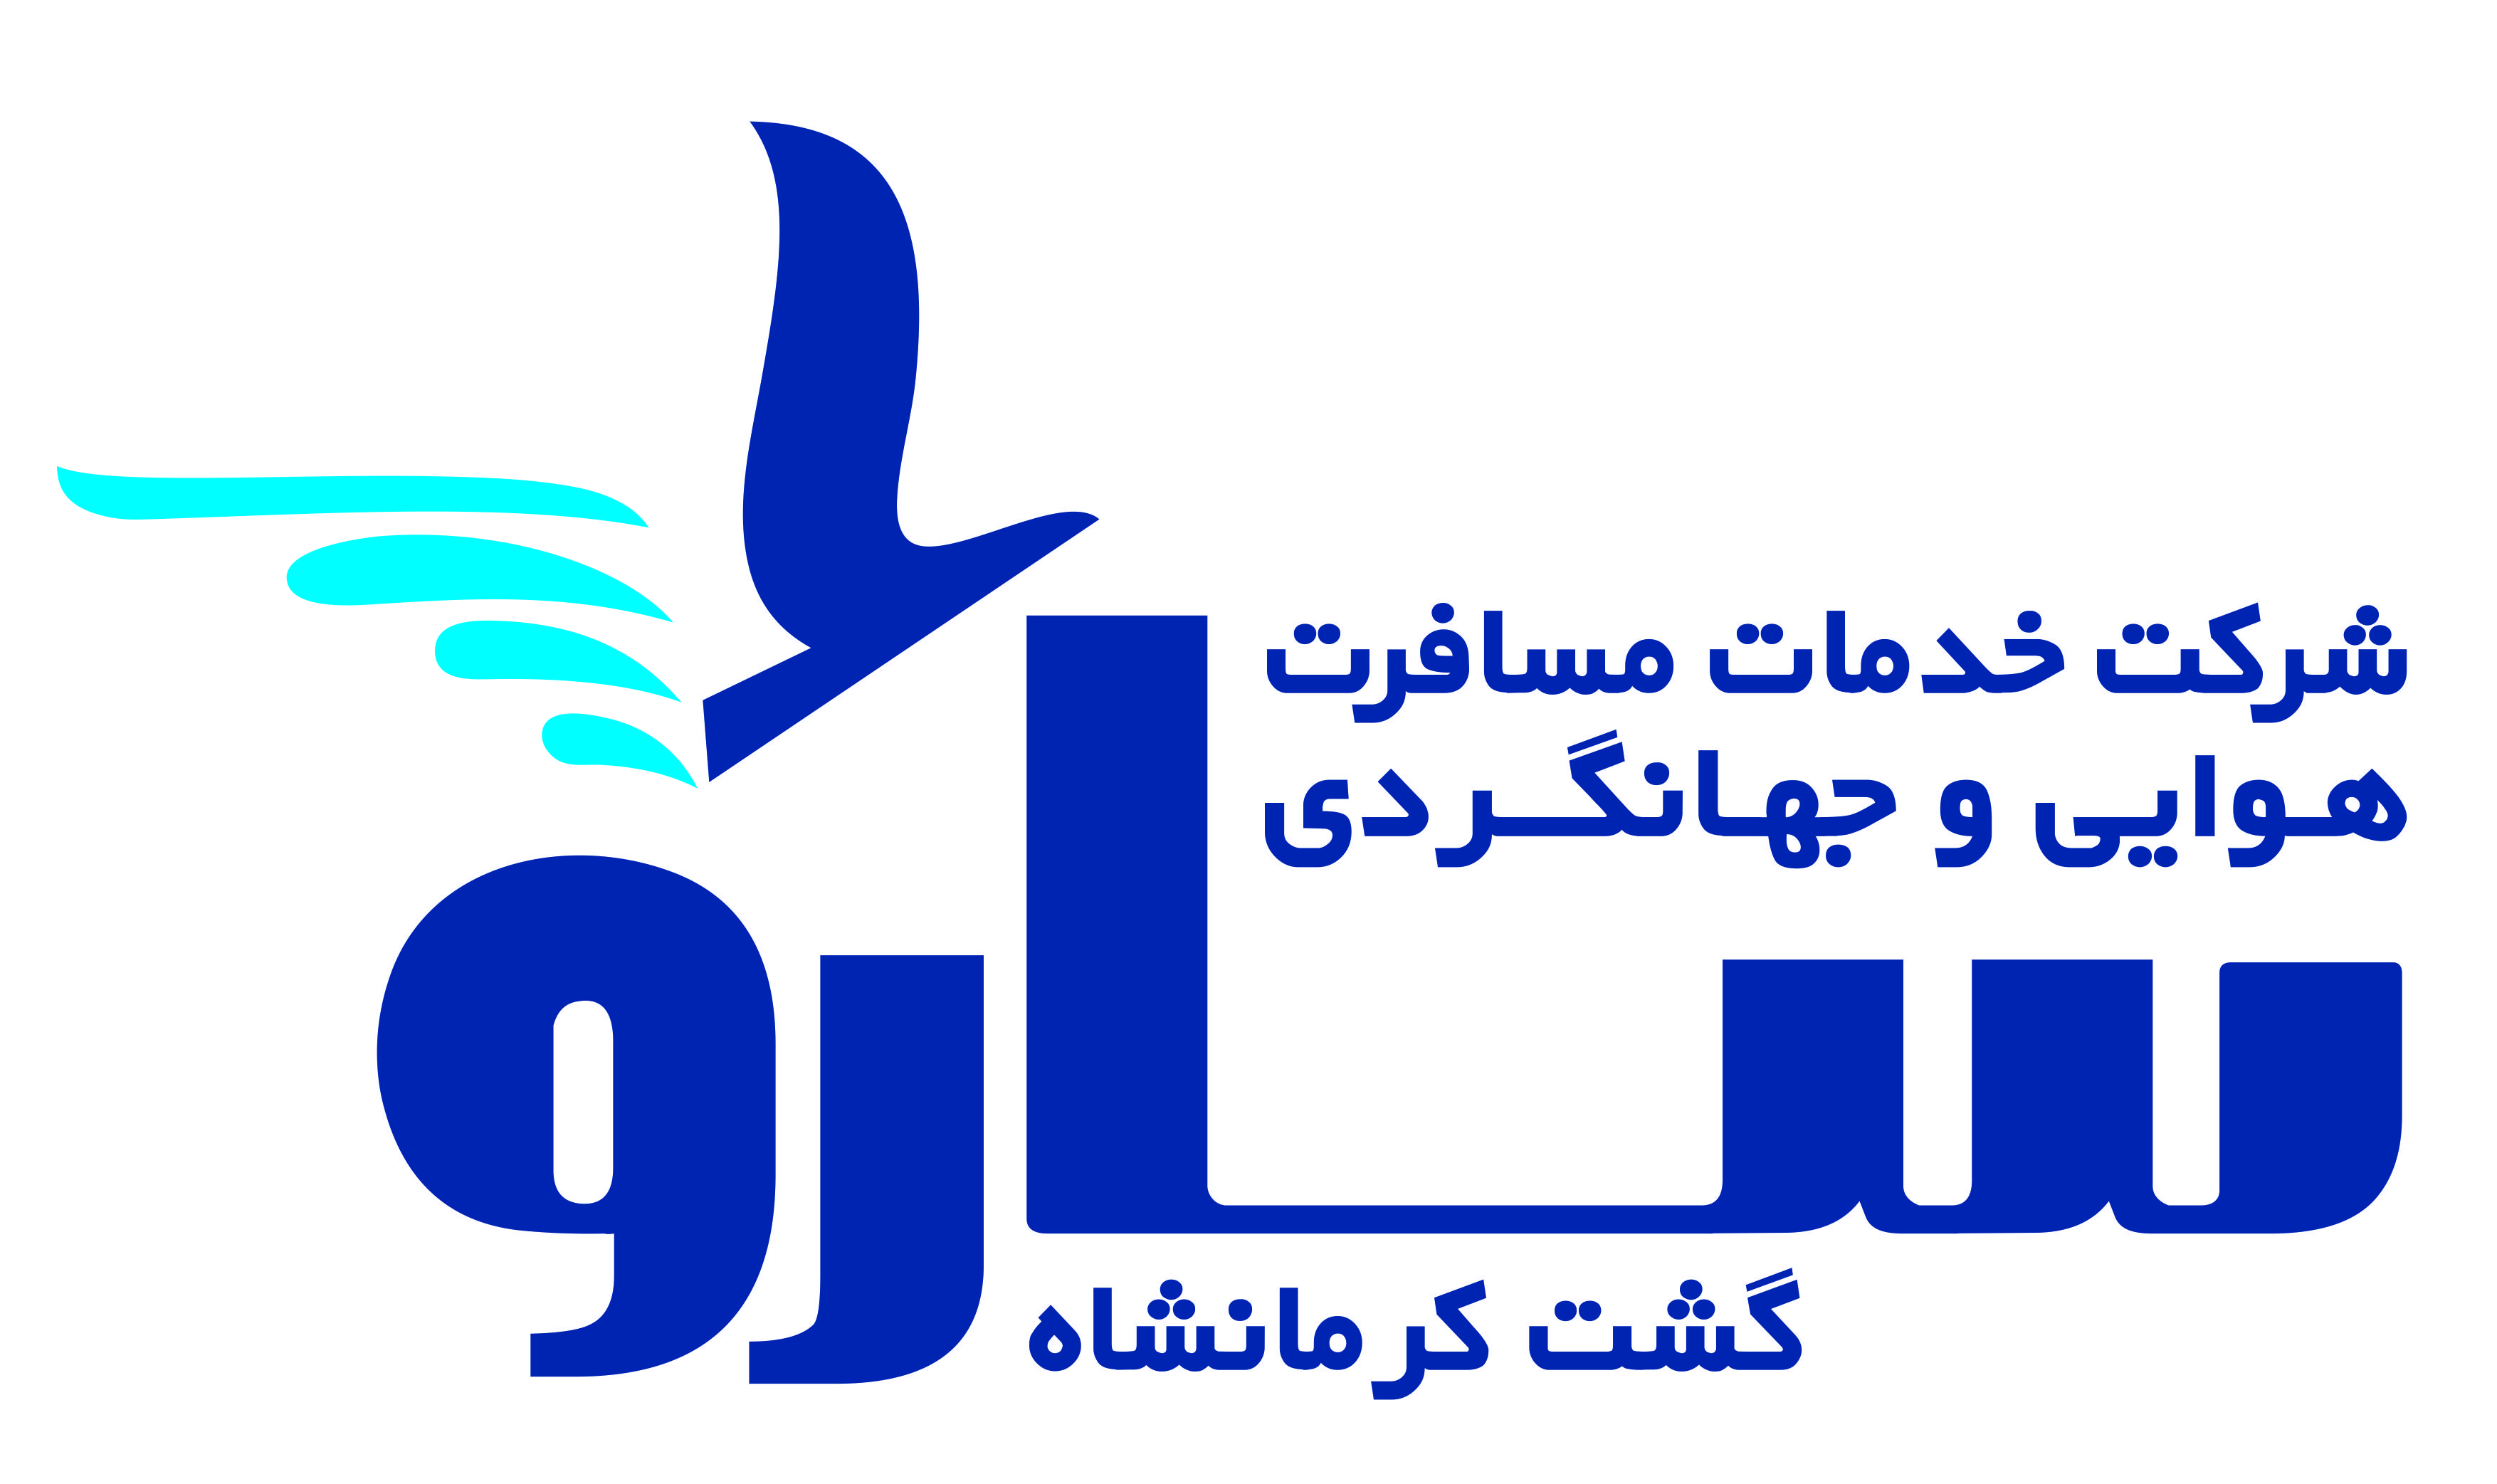 شرکت خدمات مسافرت هوایی و جهانگردی سارو گشت کرمانشاه